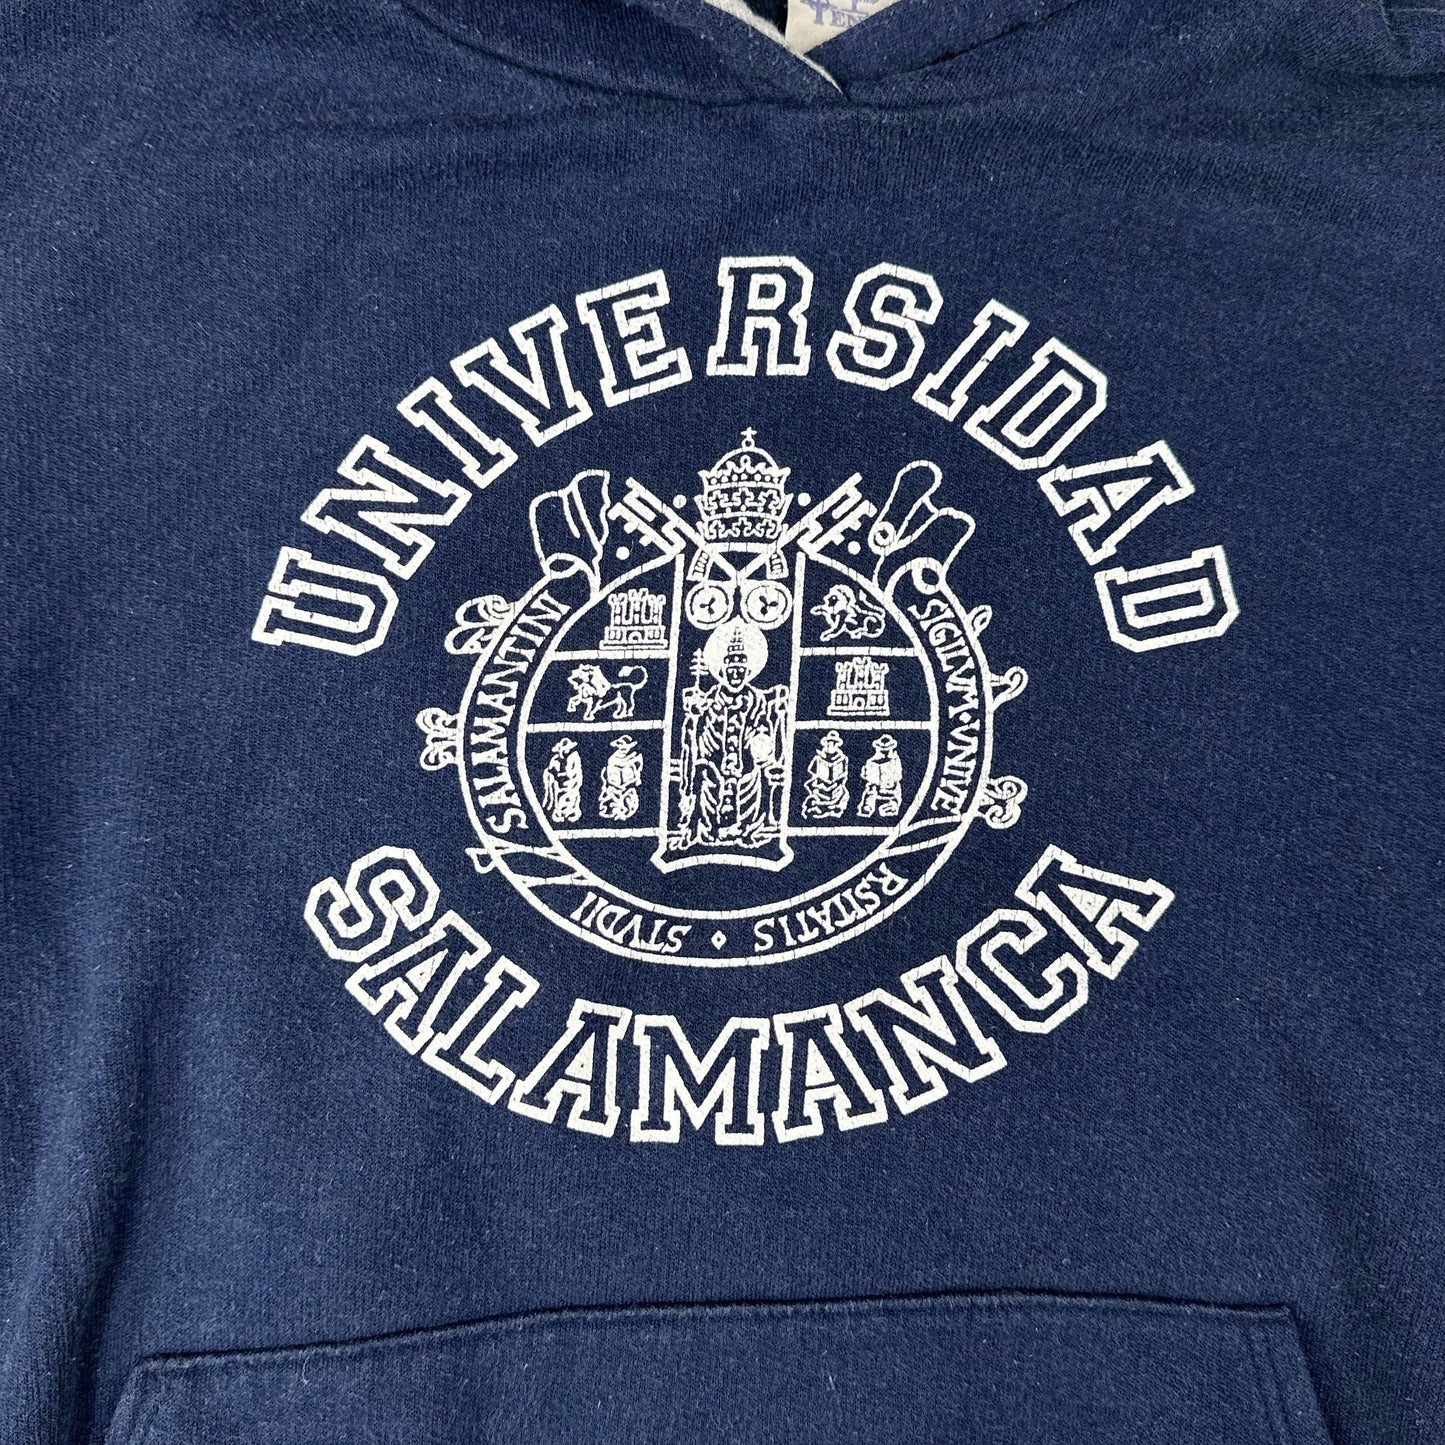 Vintage Universidad Salamanca Navy Blue Hoodie